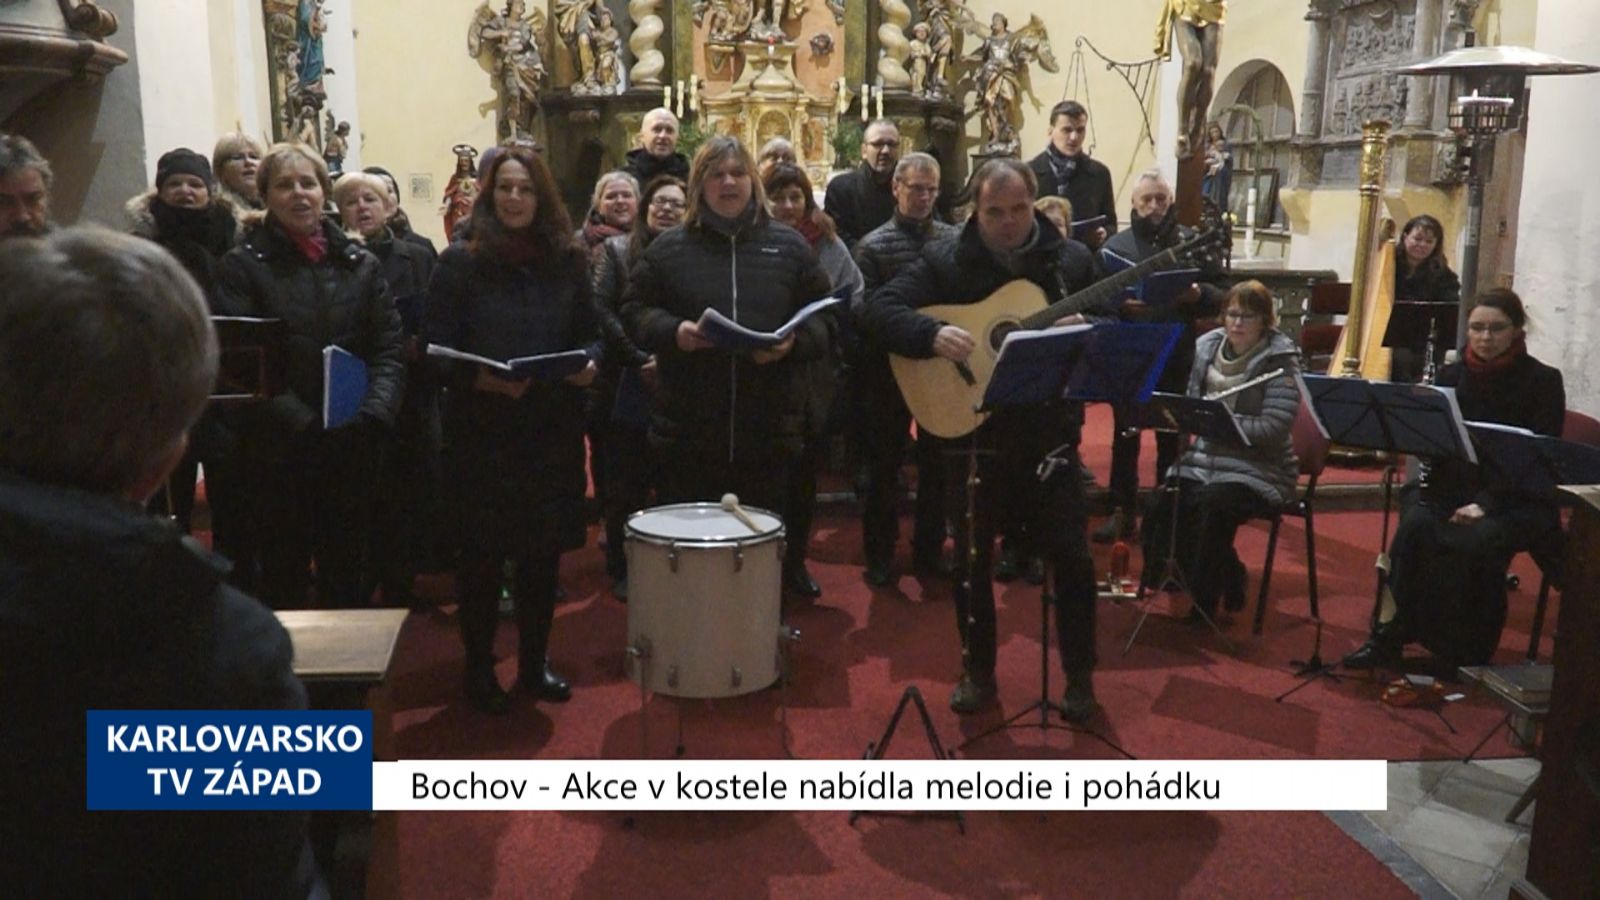 Bochov: Akce v kostele nabídla melodie i pohádku (TV Západ)